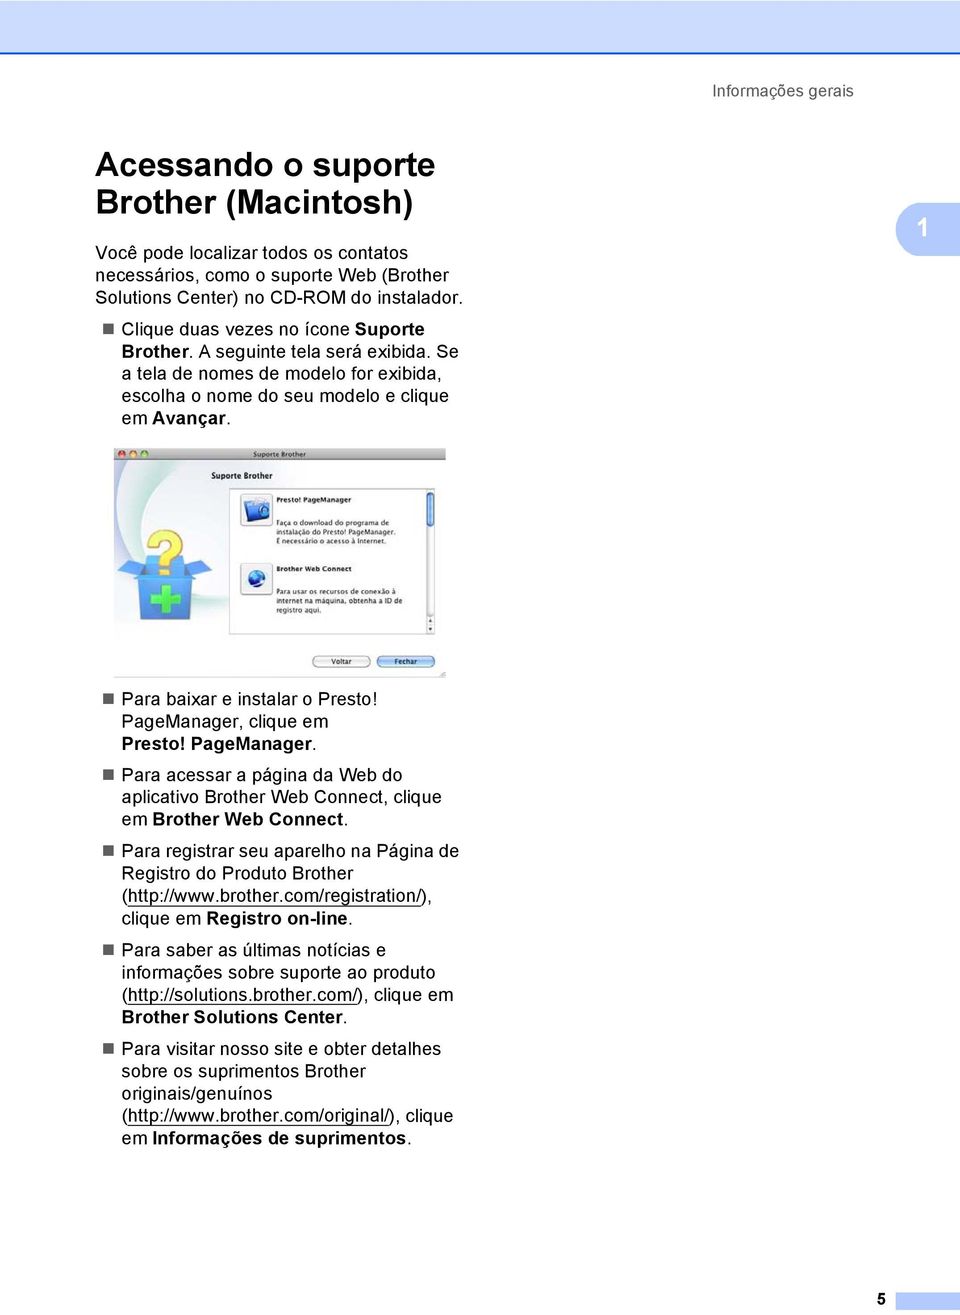 PageManager, clique em Presto! PageManager. Para acessar a página da Web do aplicativo Brother Web Connect, clique em Brother Web Connect.